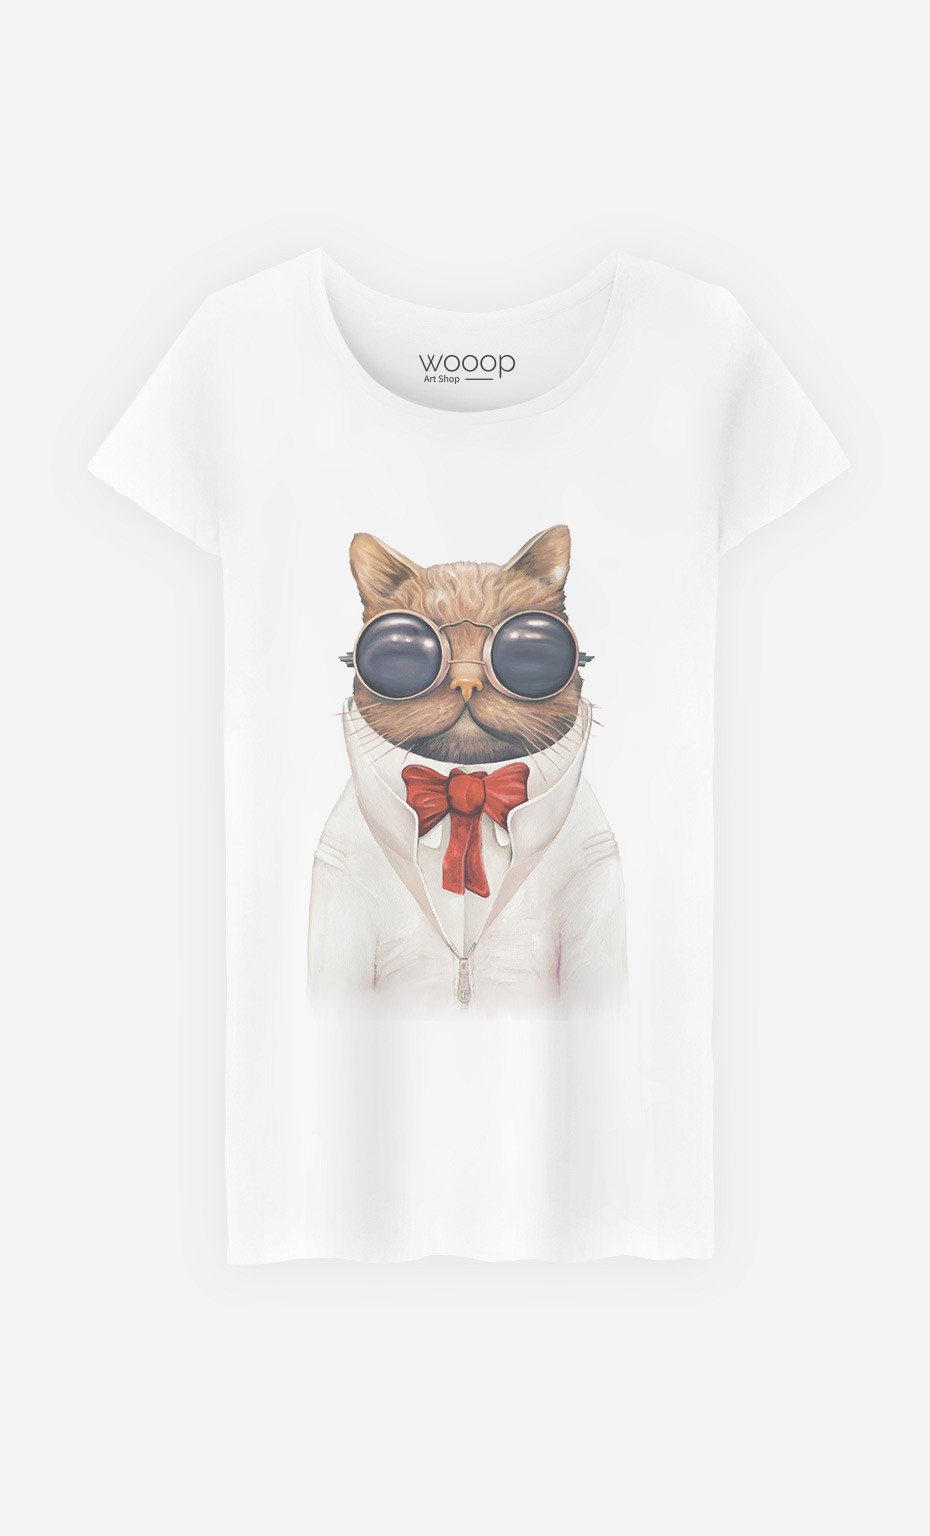 T-Shirt Astro Cat